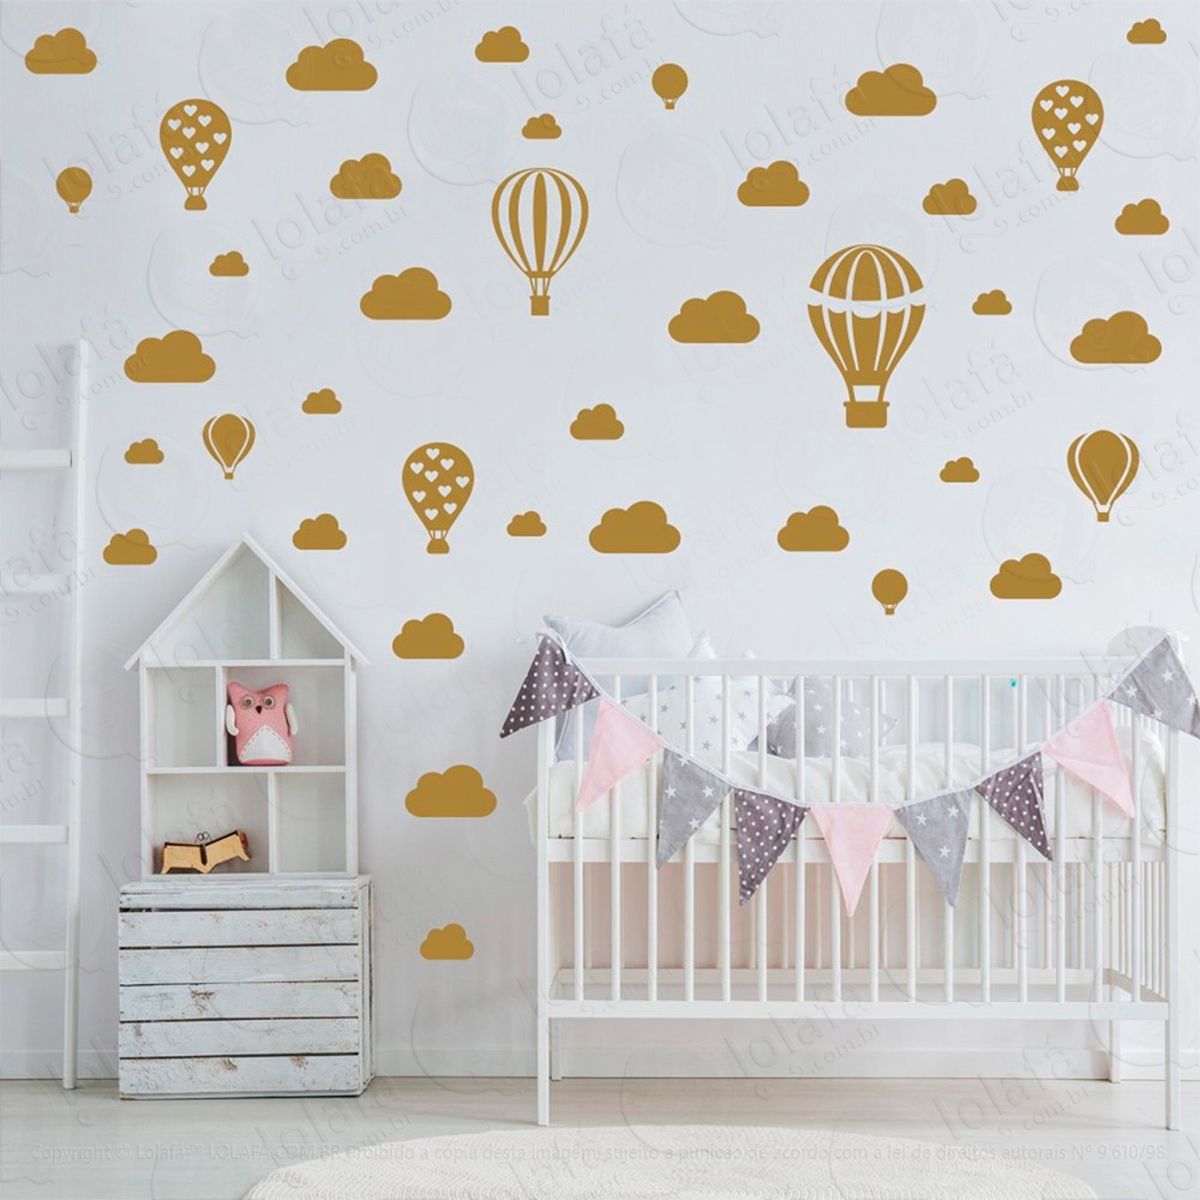 adesivos balões e nuvens 42 peças adesivos para quarto de bebê infantil - mod:790